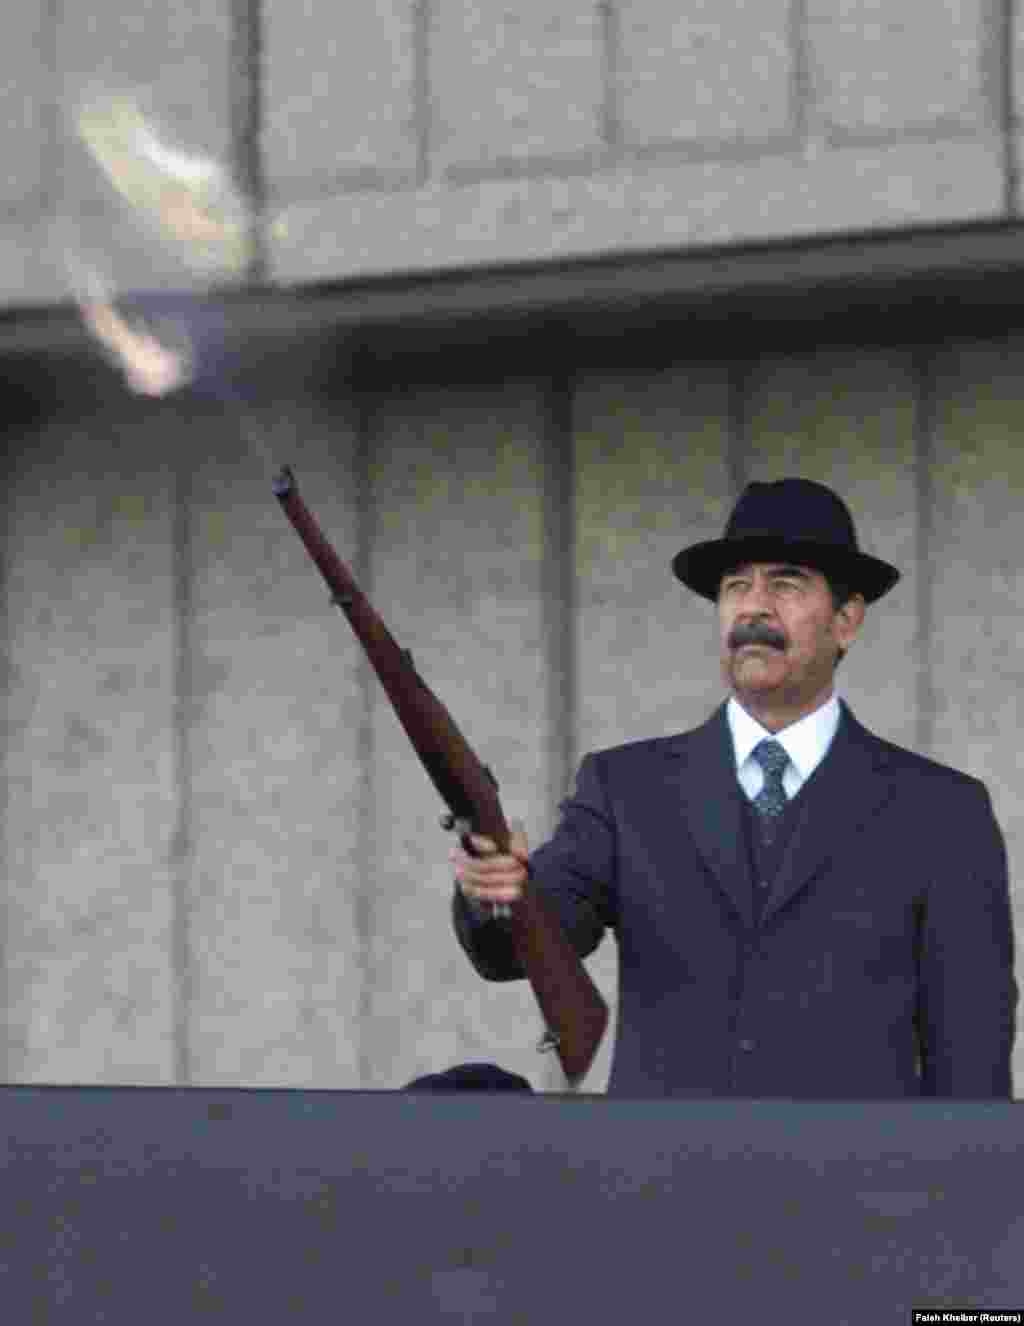 Президент Ирака Саддам Хусейн стреляет из винтовки, которую держит в одной руке. В другой &mdash; сигара. Действие происходит во время военного парада в декабре 2000 года.